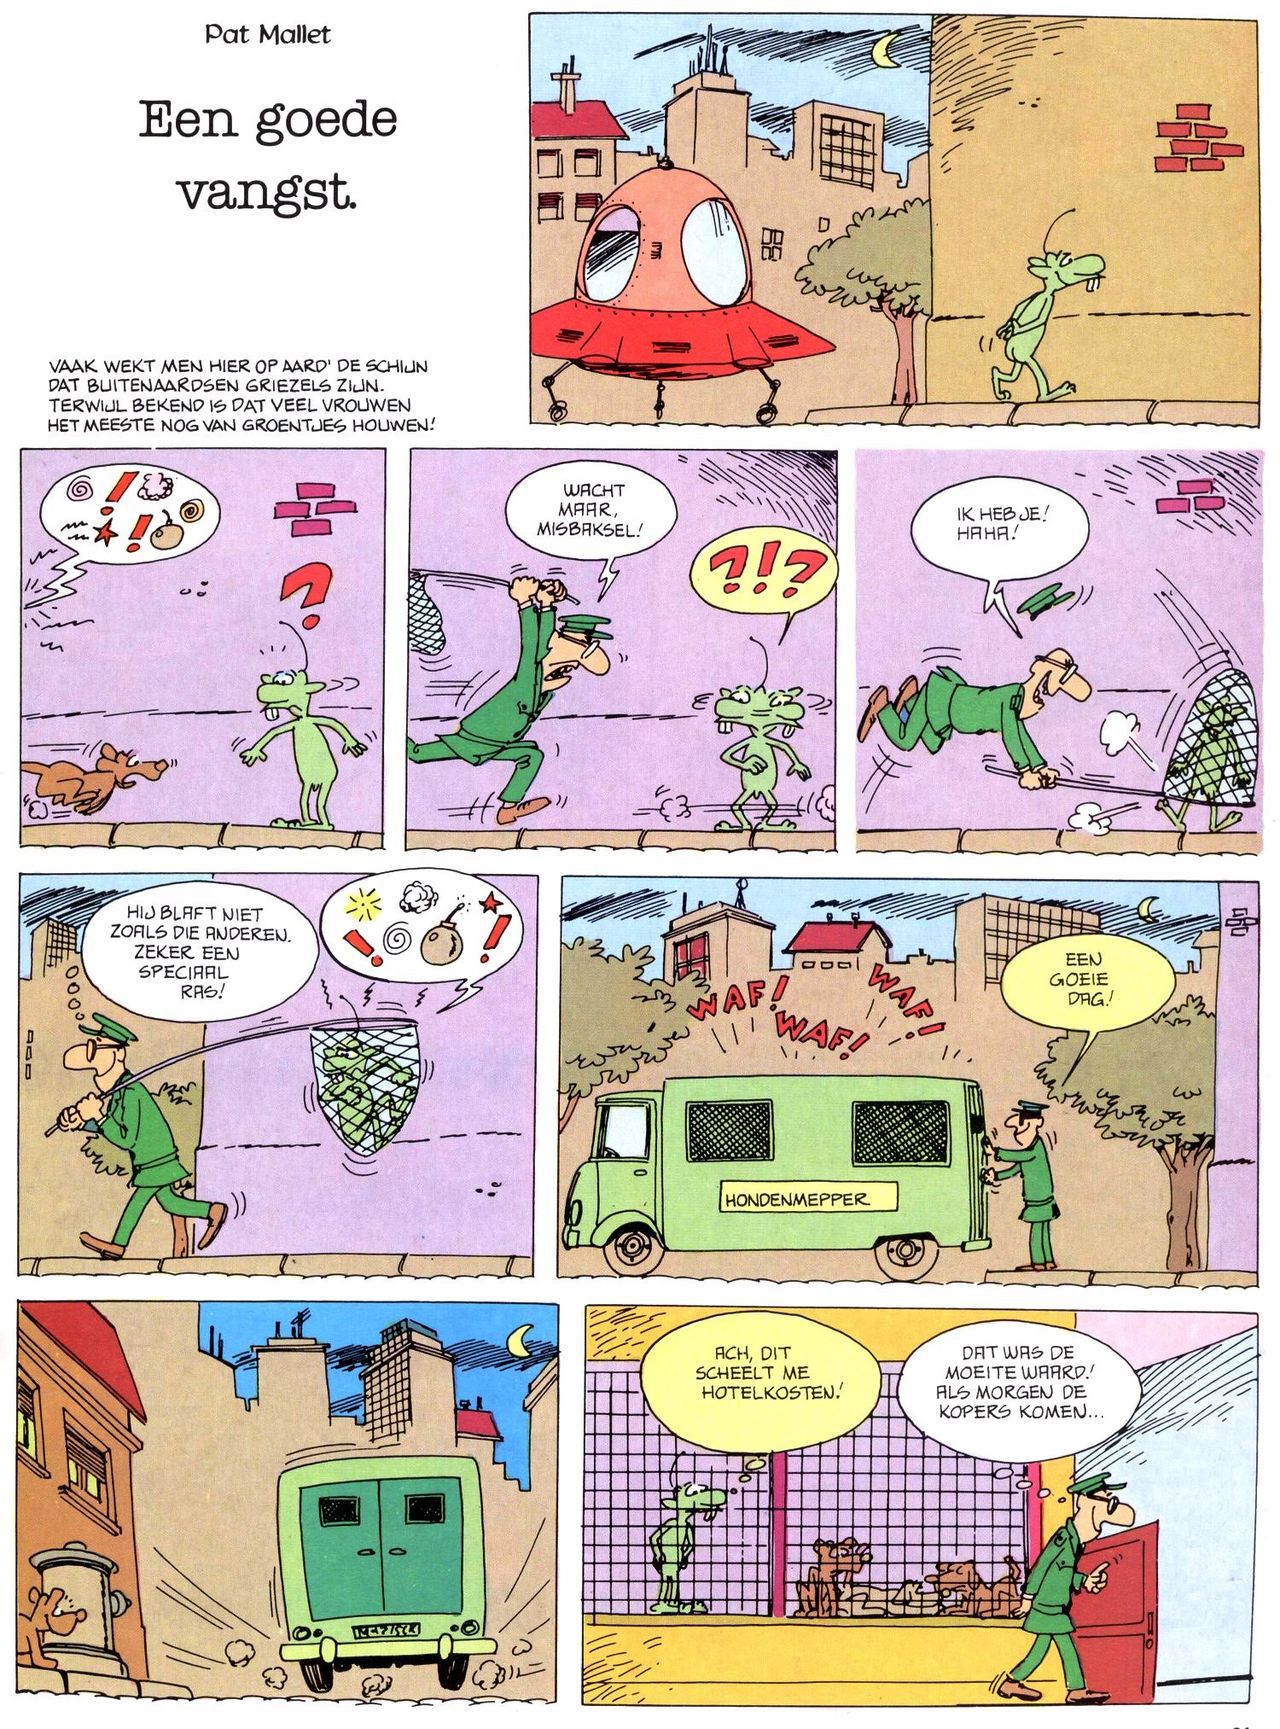 Het Is Groen En Het.. - 02 - Verboden Op Het Gras Te Lopen (Dutch) Een oude humoristische serie van Pat Mallet 19